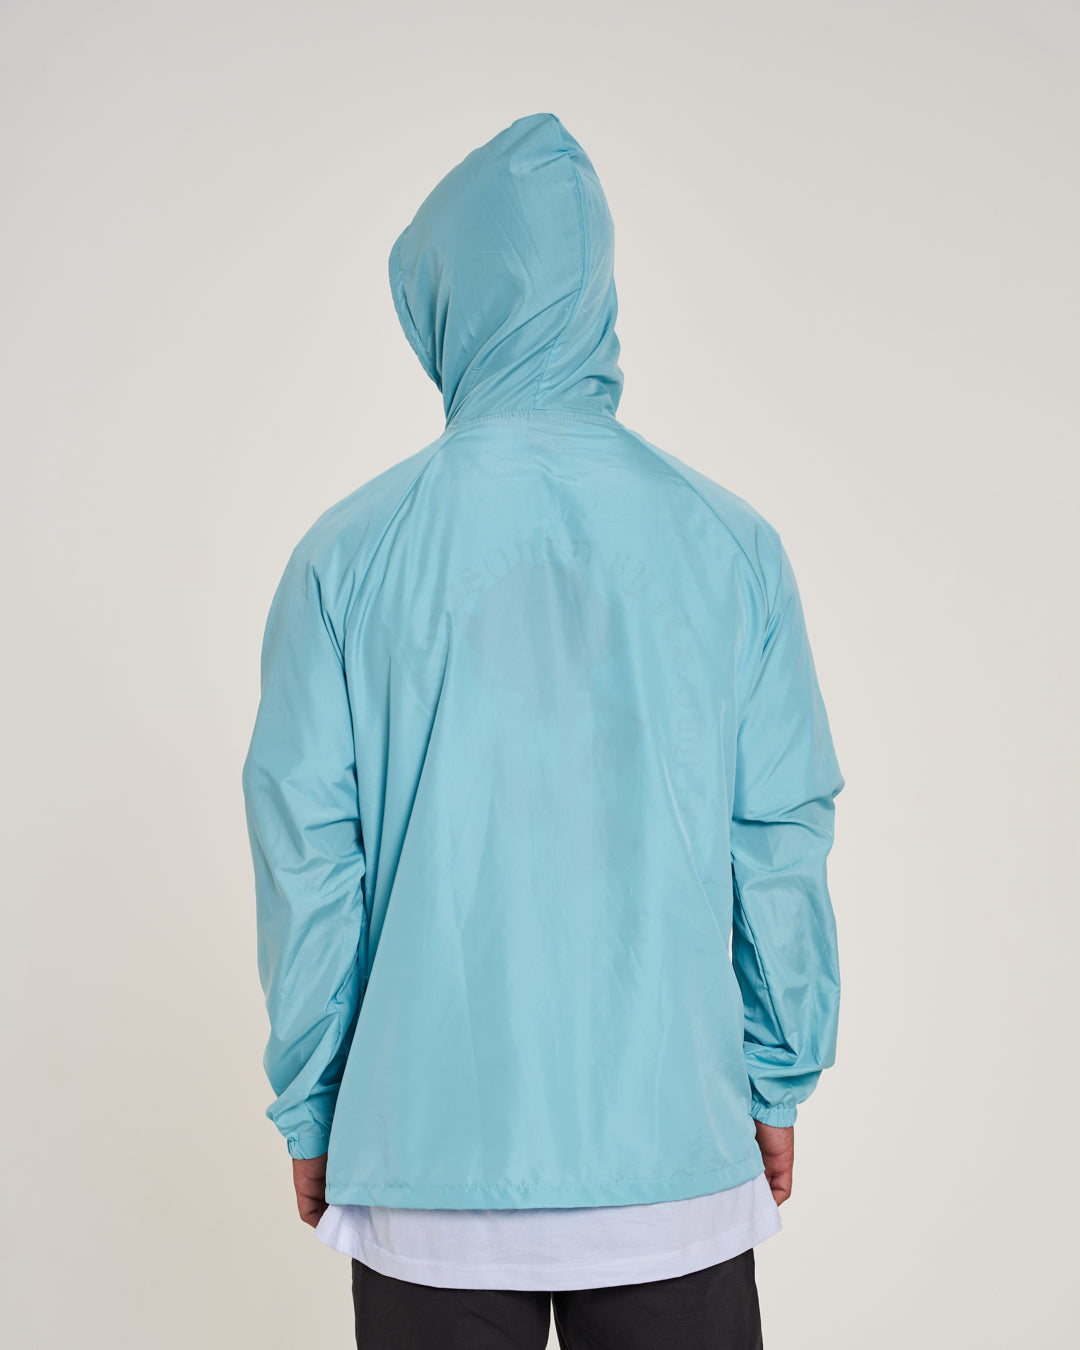 Waterproof Soft Windbreaker Jacket - Aqua Blue